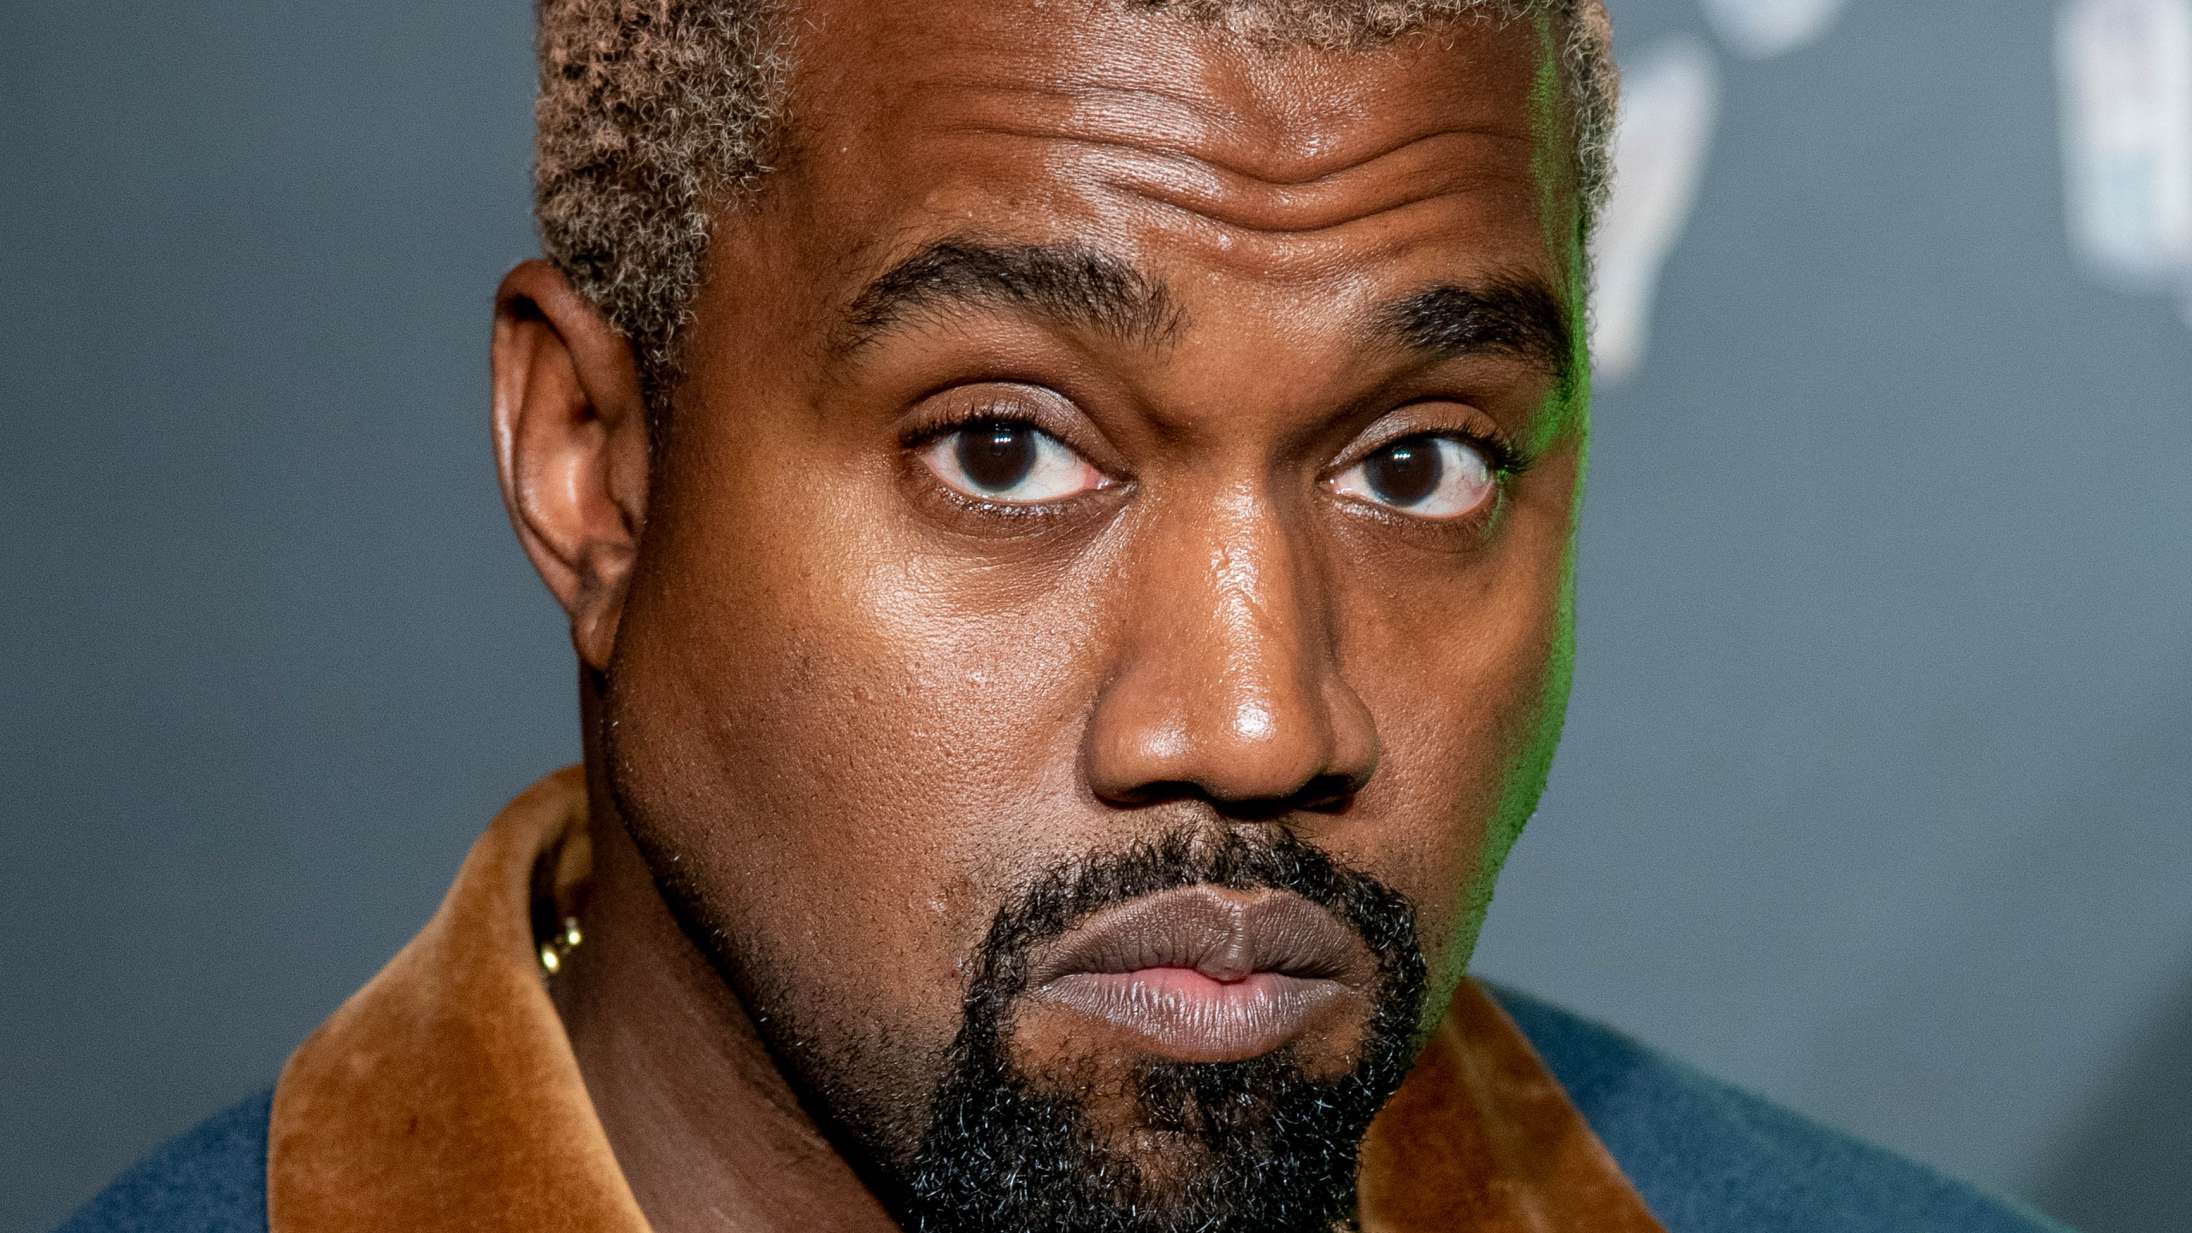 Astroworld-pårørende med skarp kritik af Kanye Wests »idiotiske« krav om undskyldning fra Billie Eilish